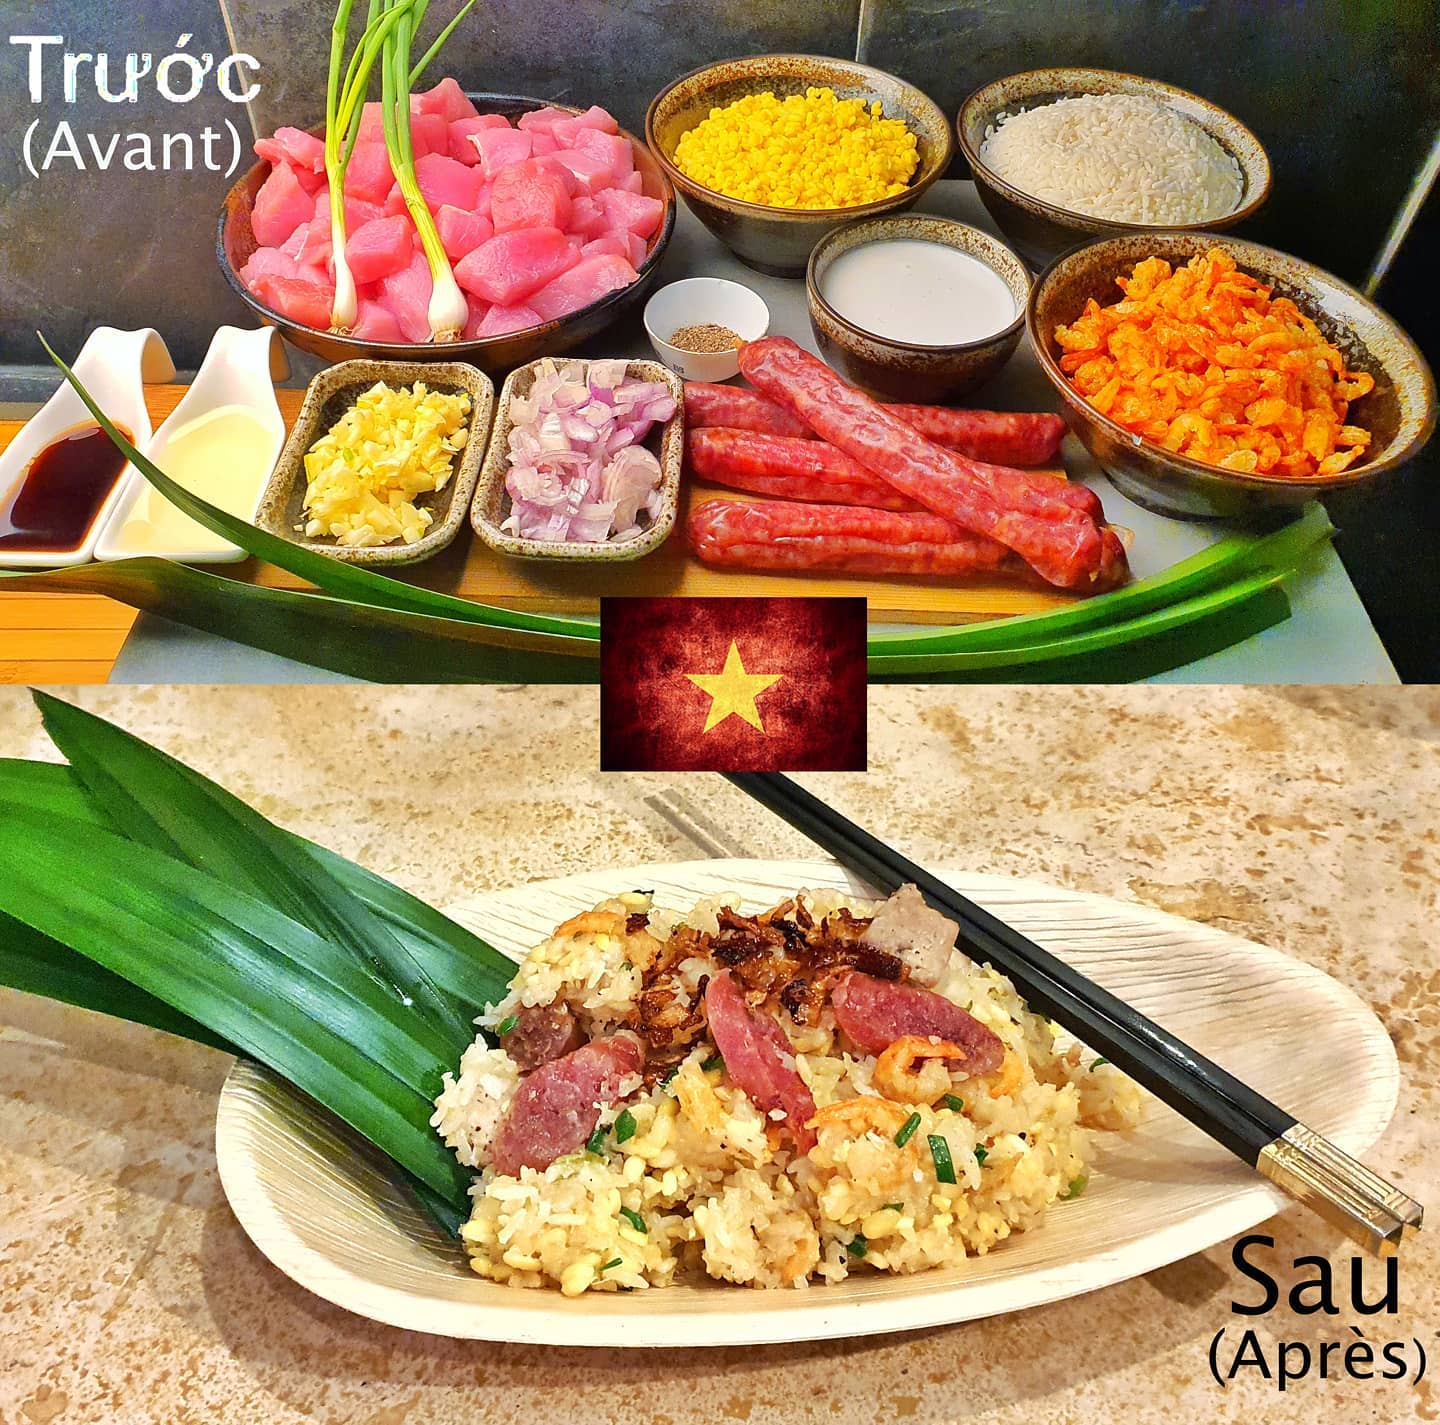 “Xôi mặn thập cẩm”: le savoureux plat vietnamien composé de riz collant, émincés de porc, crevettes